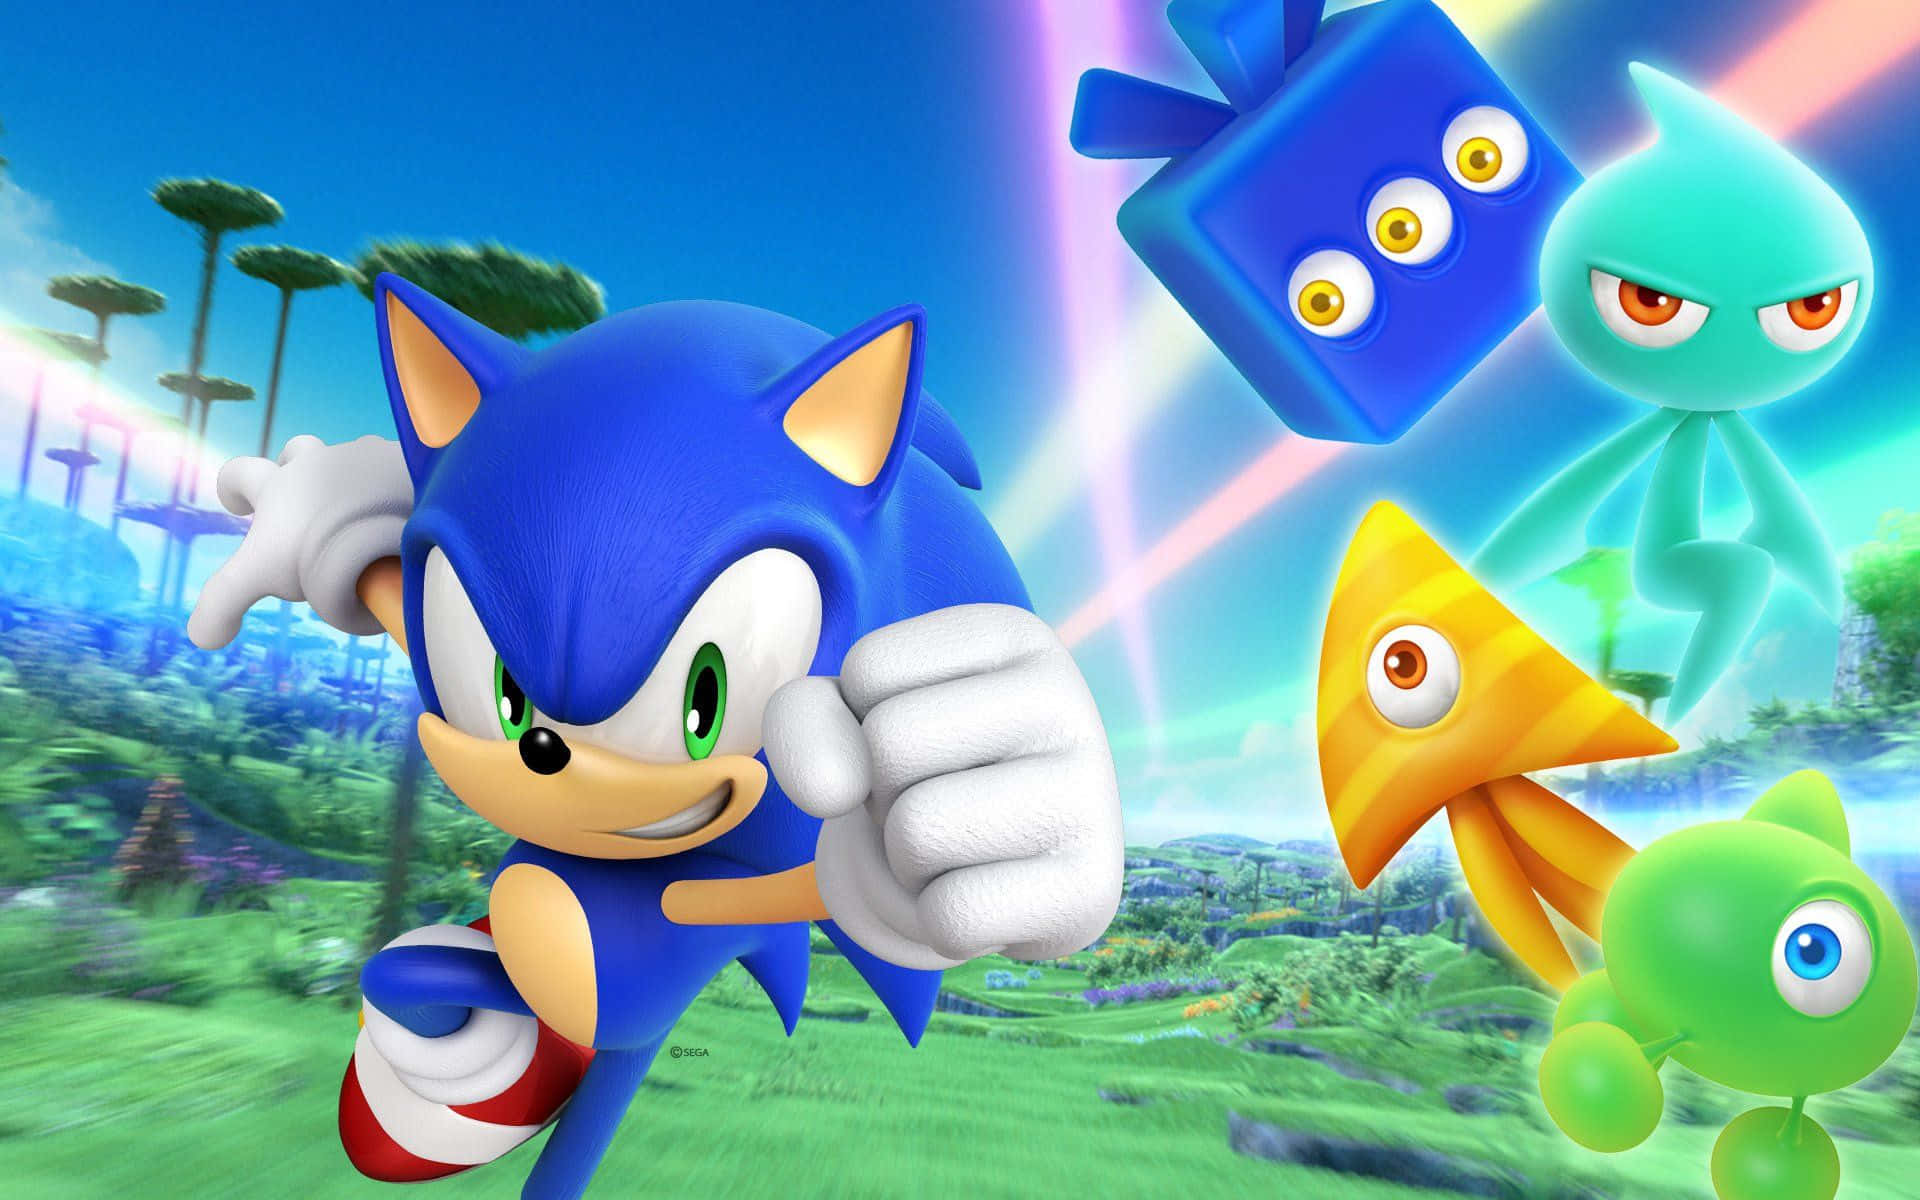 Sonicthe Hedgehog - Sonic The Hedgehog - Sonic The Hedgehog - Sonic The Hedgehog - Wallpaper